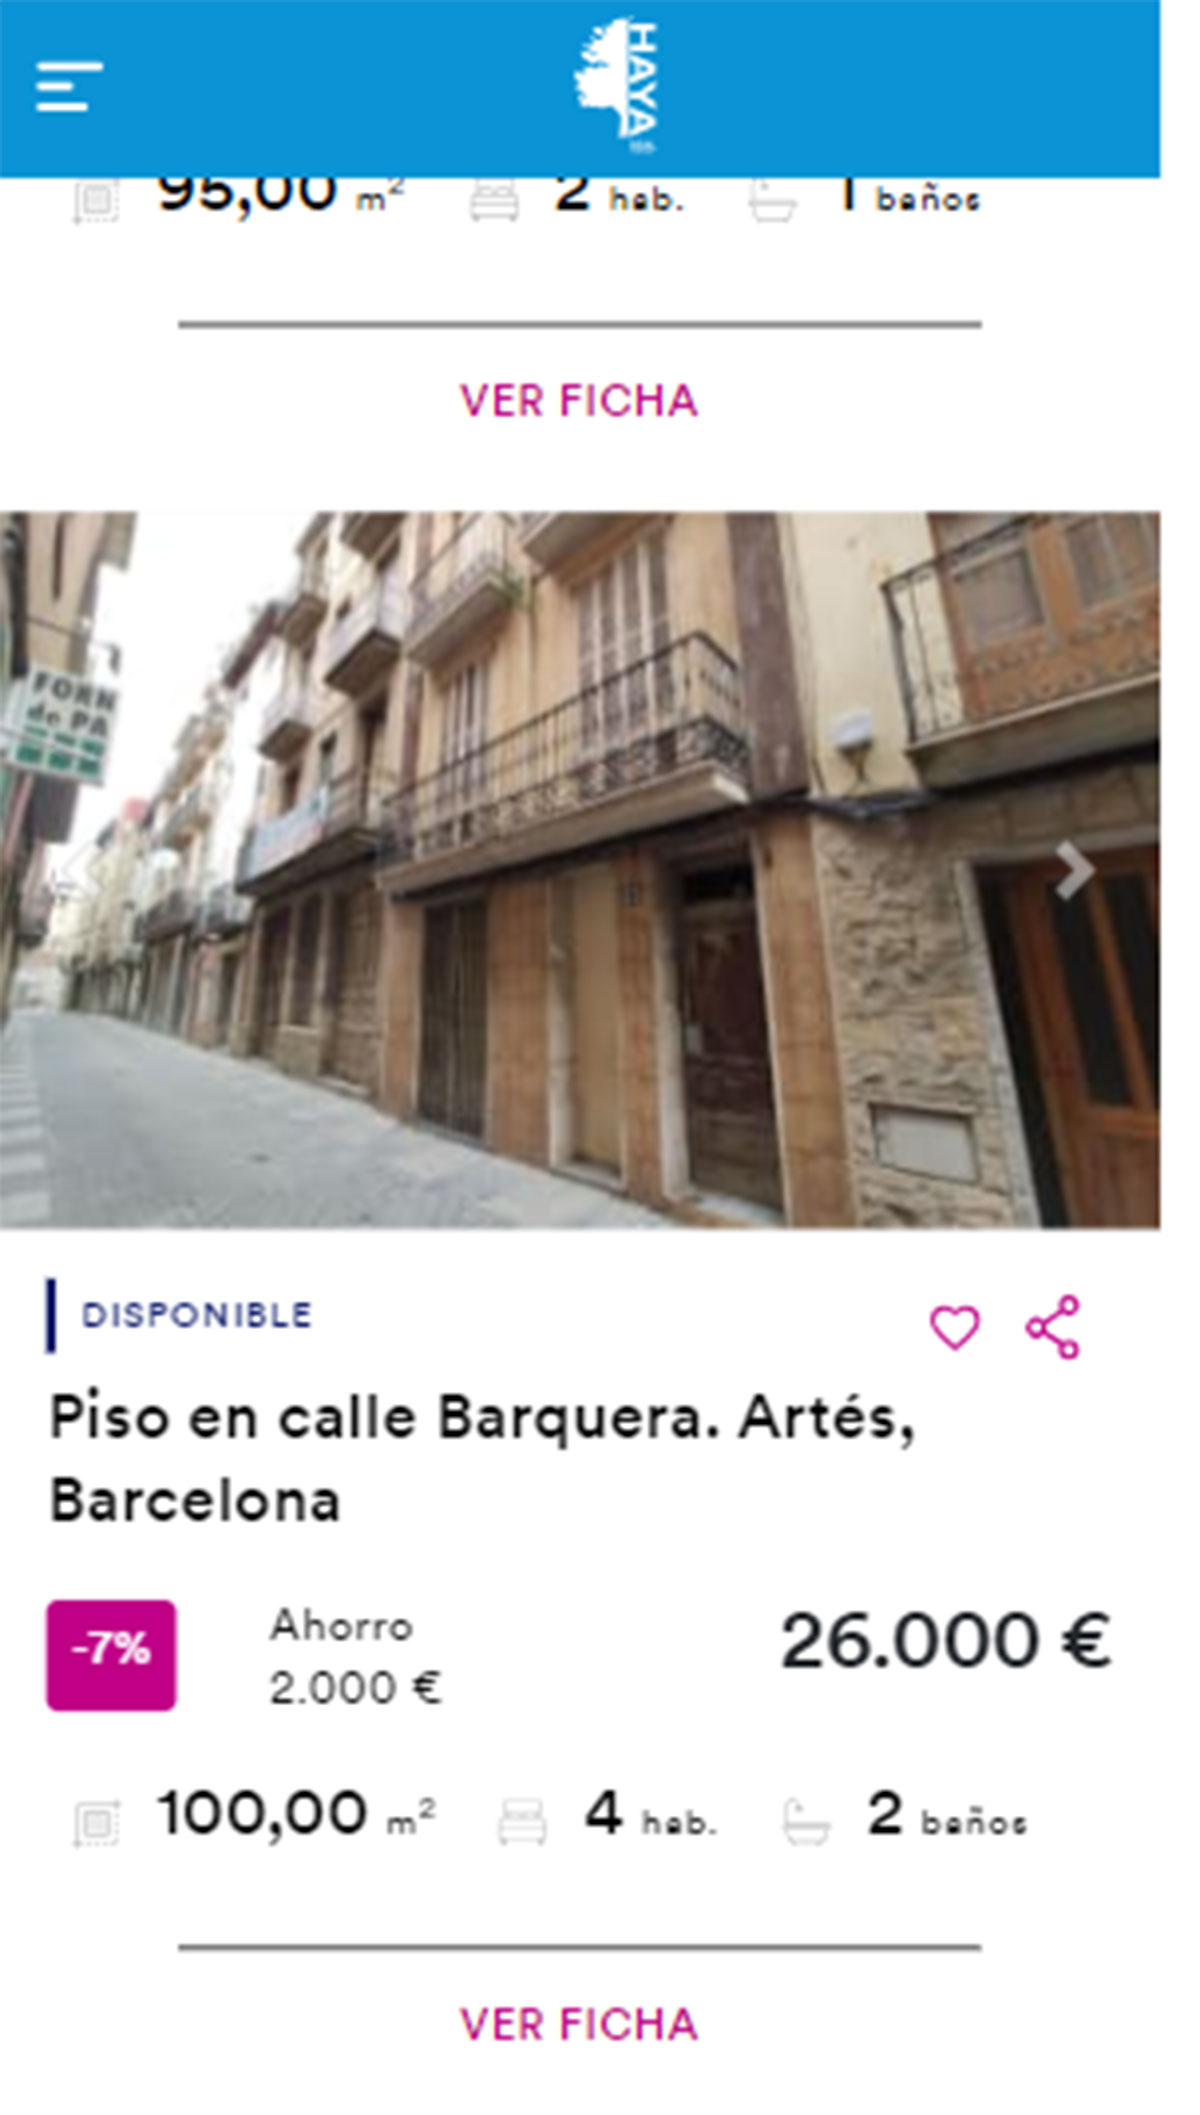 Piso en Barcelona por 26.000 euros